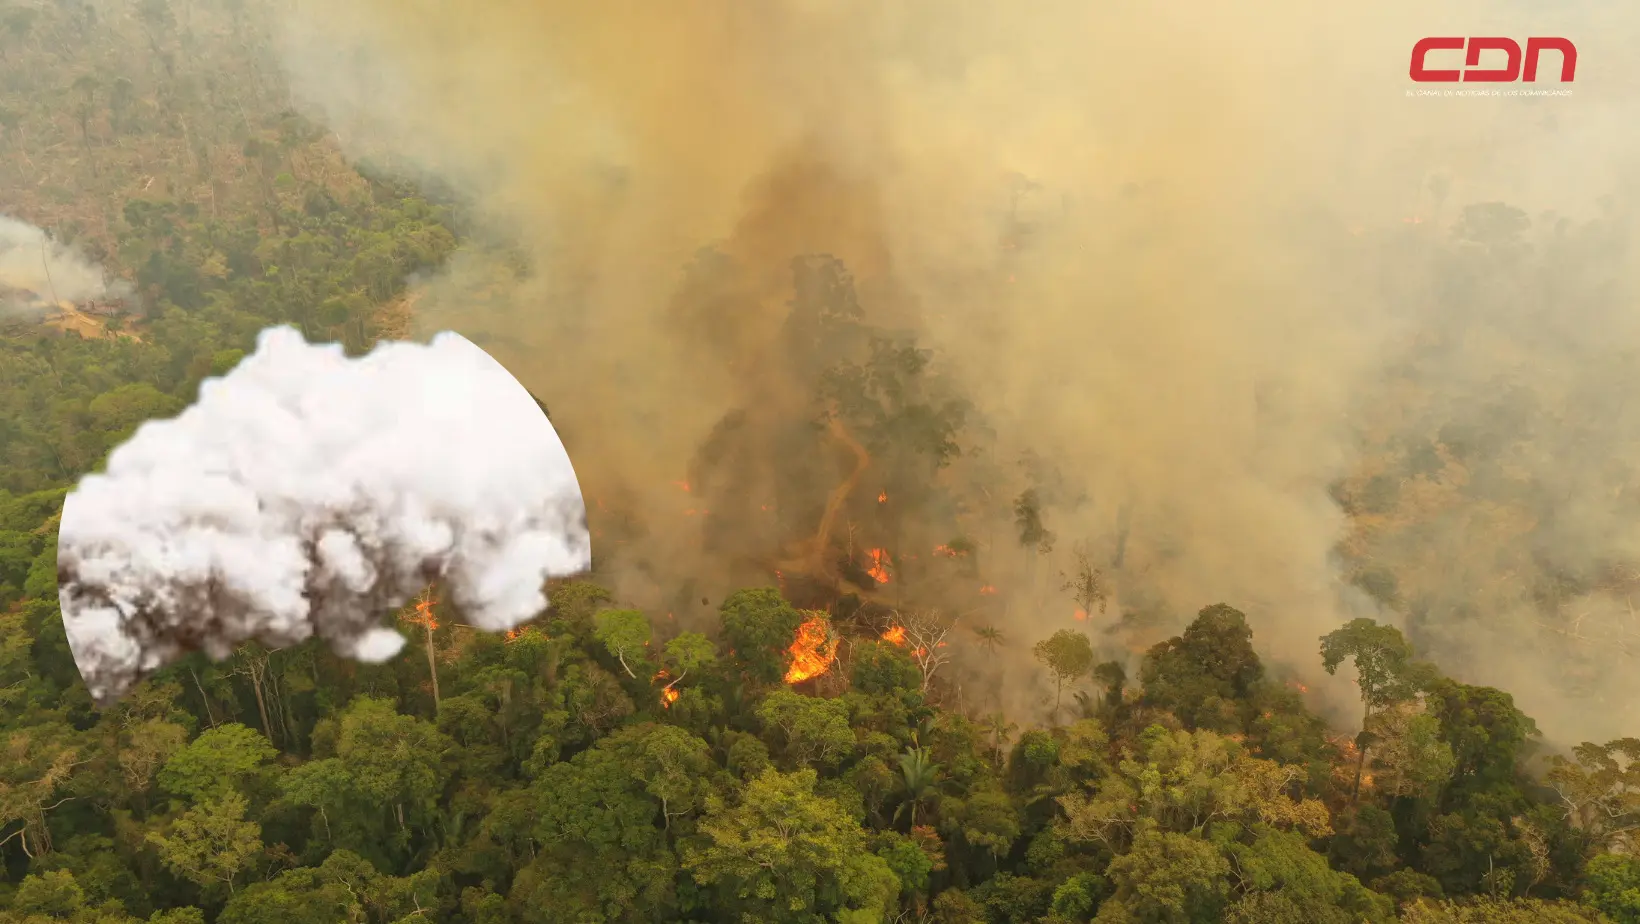 Emisiones de dióxido de carbono por incendios forestales. Foto: CDN Digital